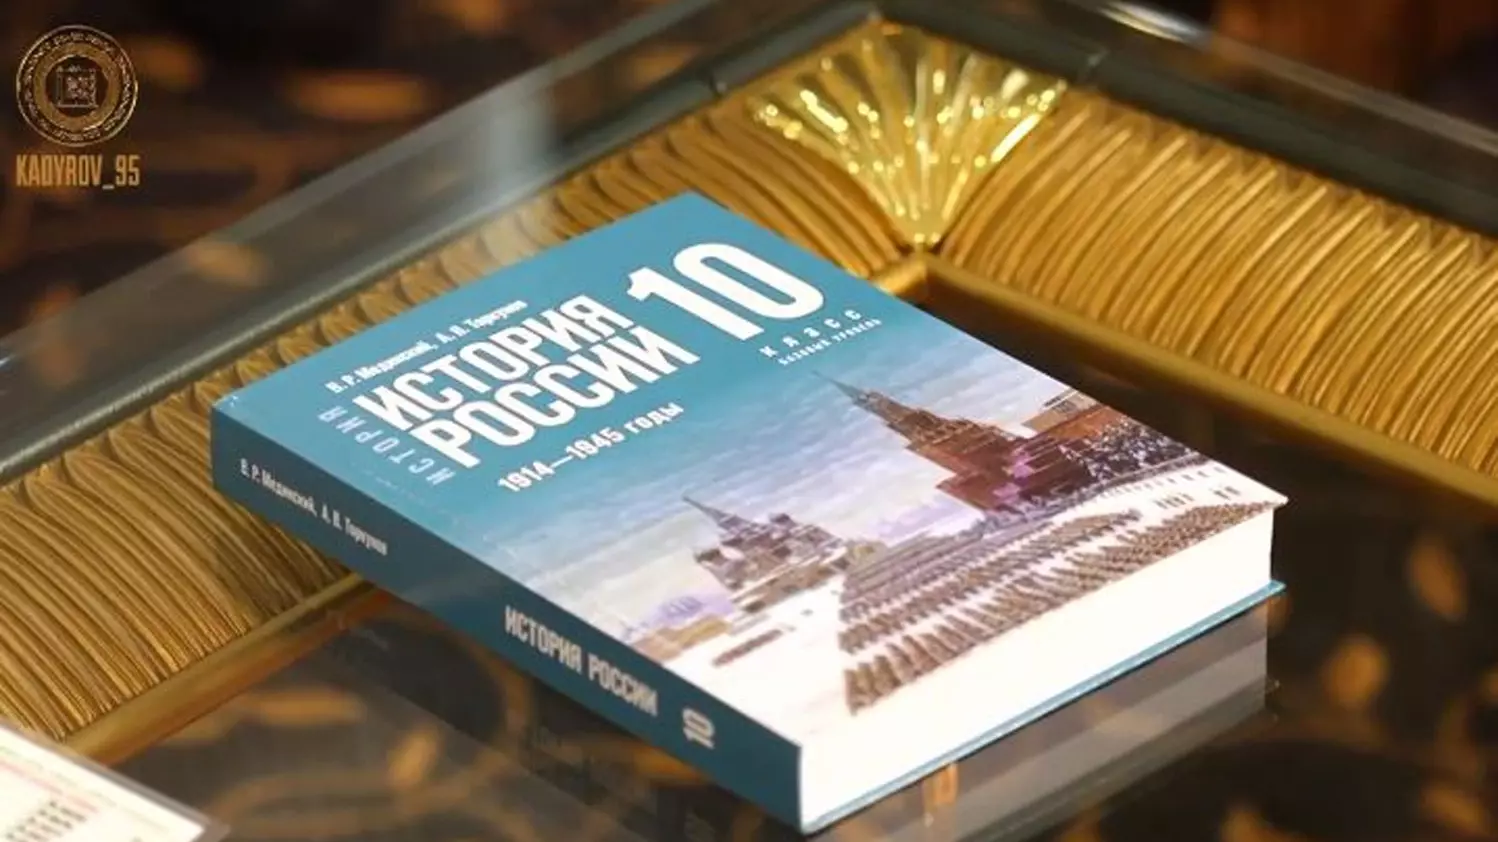 Ошибки исправлены: министр Кравцов лично утвердил с Кадыровым новый учебник истории